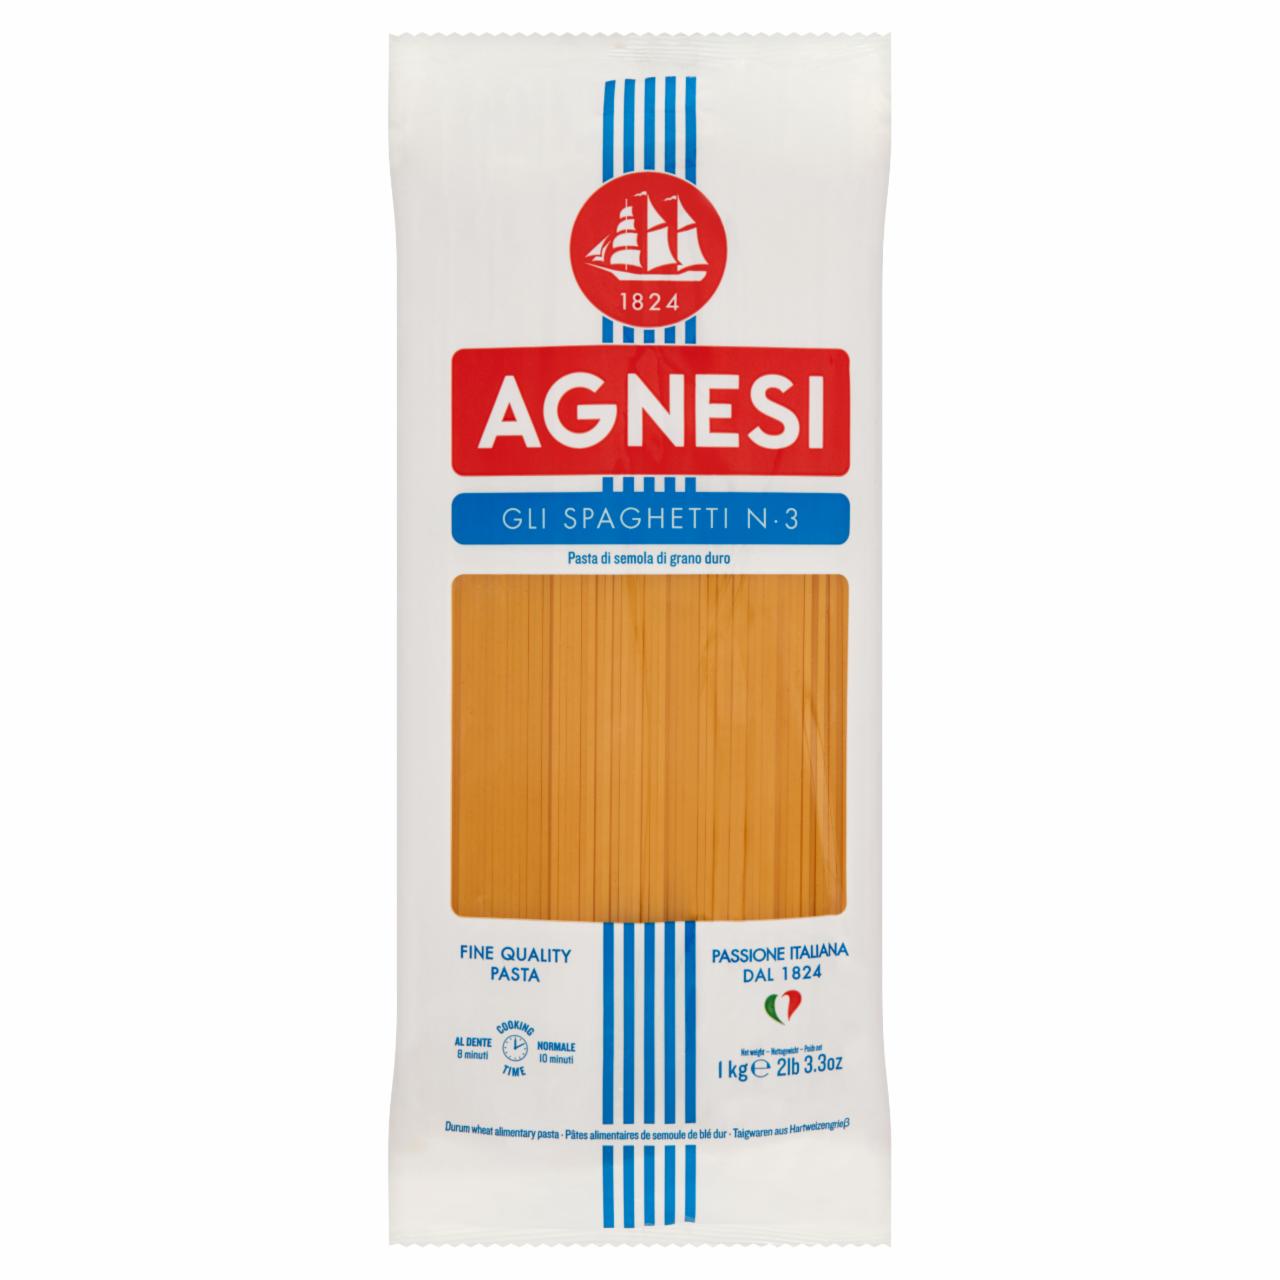 Zdjęcia - Agnesi Makaron Spaghetti nr 3 1 kg